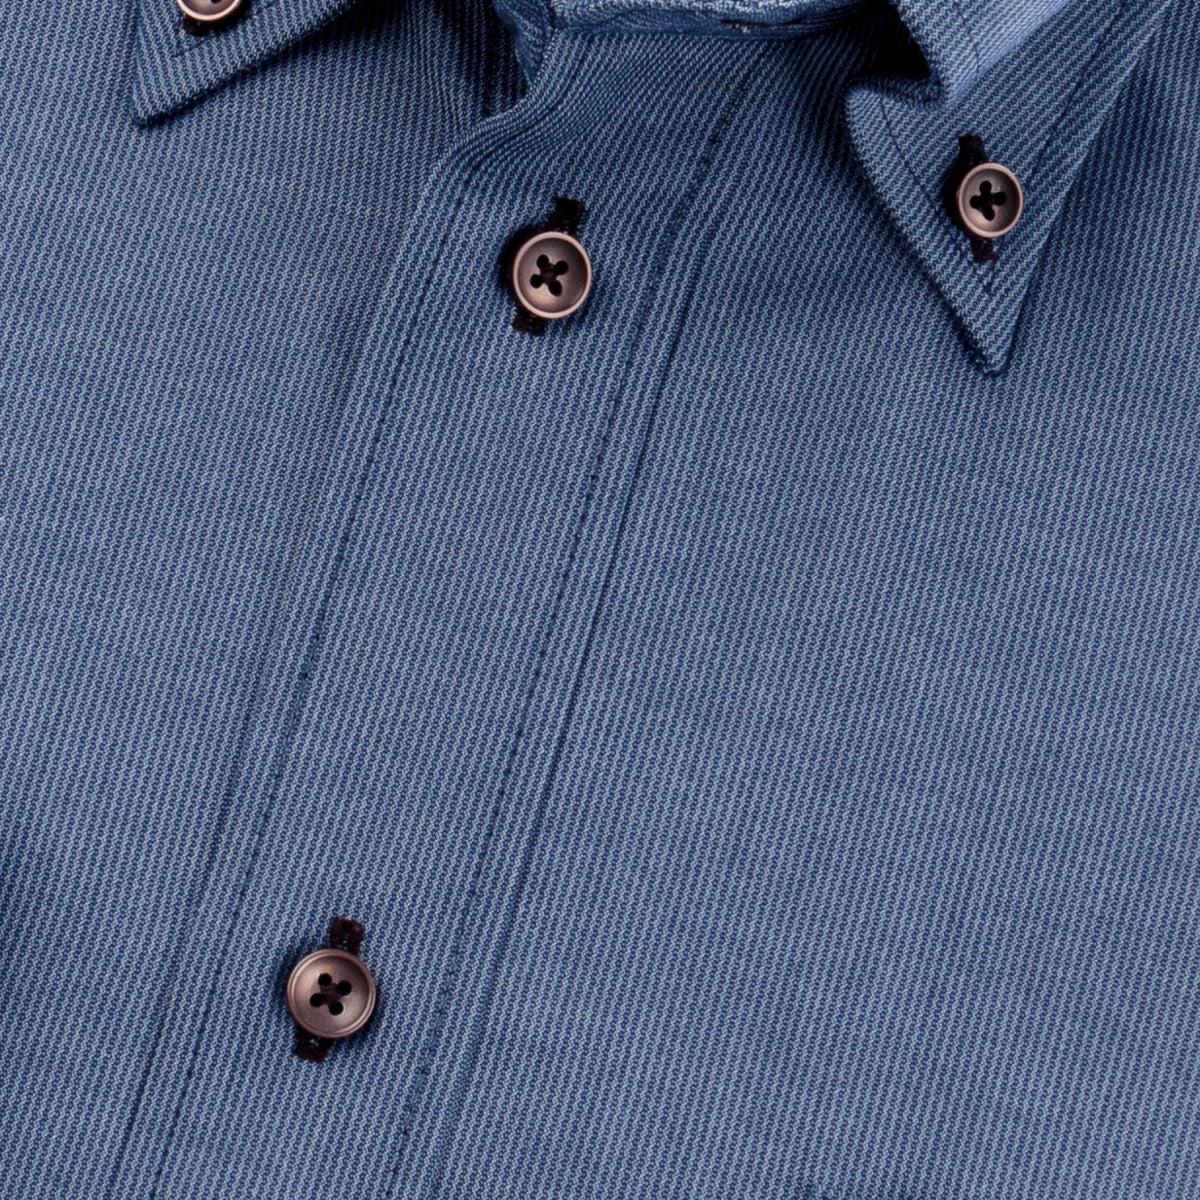 デニムライクシャツ<br>ビジカジスタイルに最適<br>ブラウンのボタンが映える